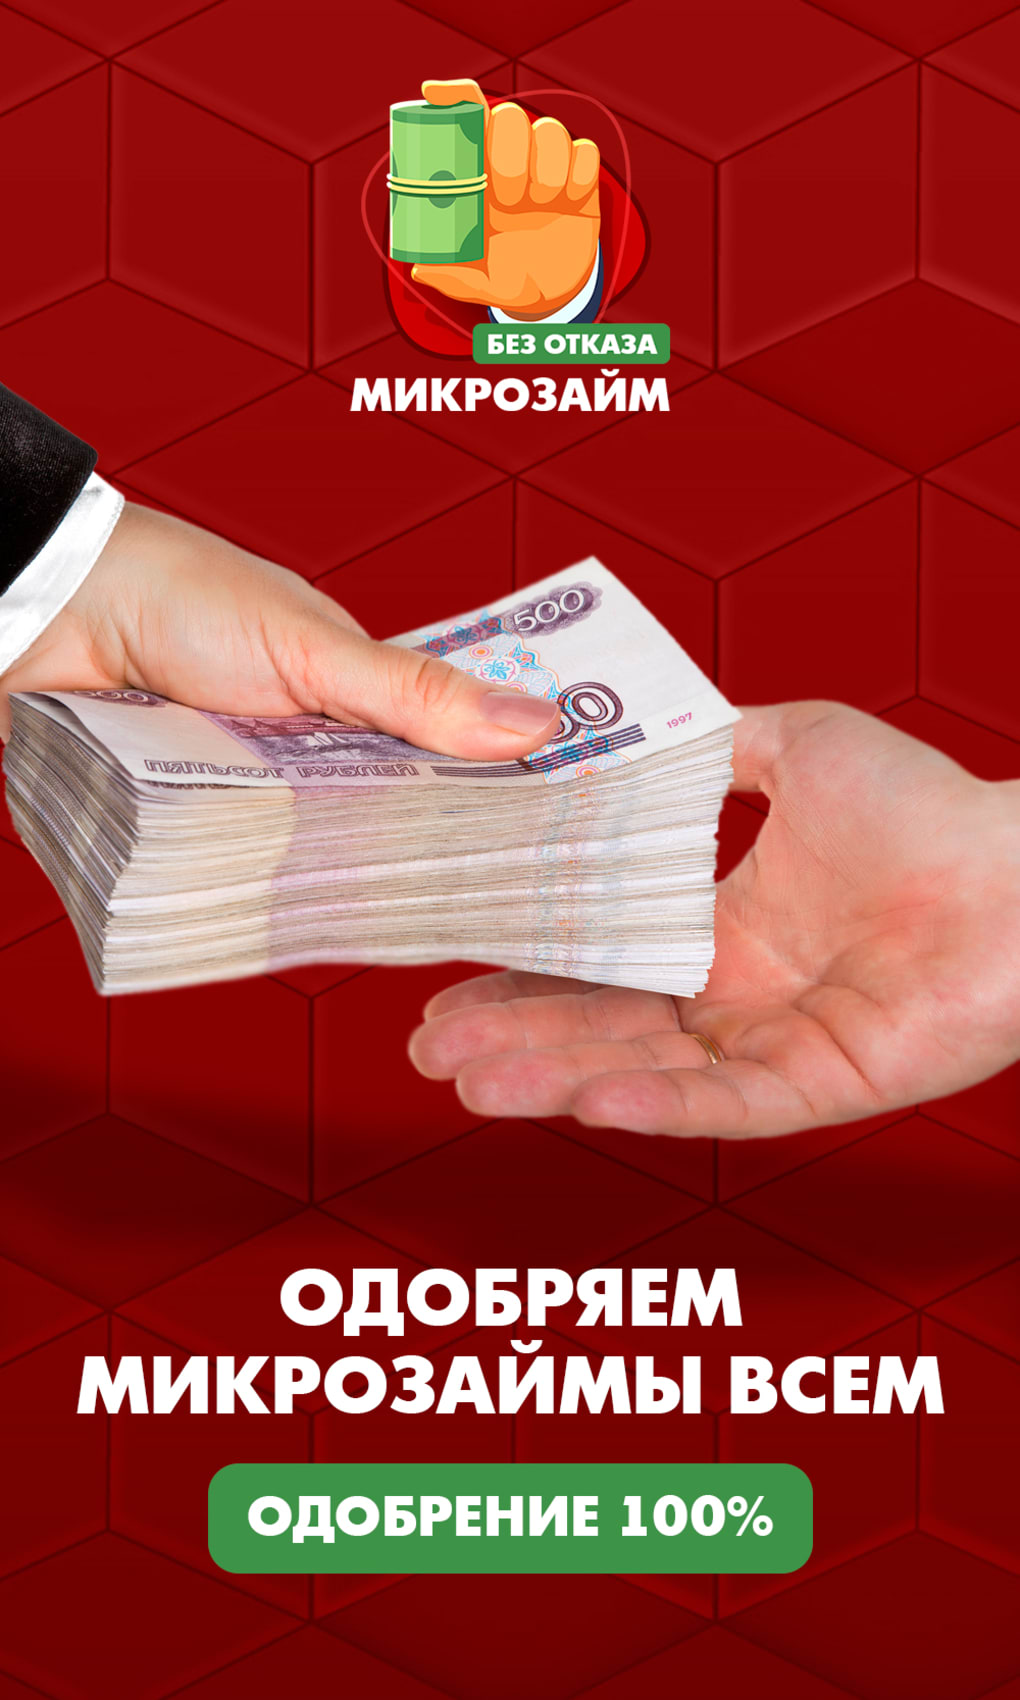 Займы во Казахстане Микрокредиты нате карту Микрокредиты изо доставкой Товарищество МФО БАКЫТ Буква